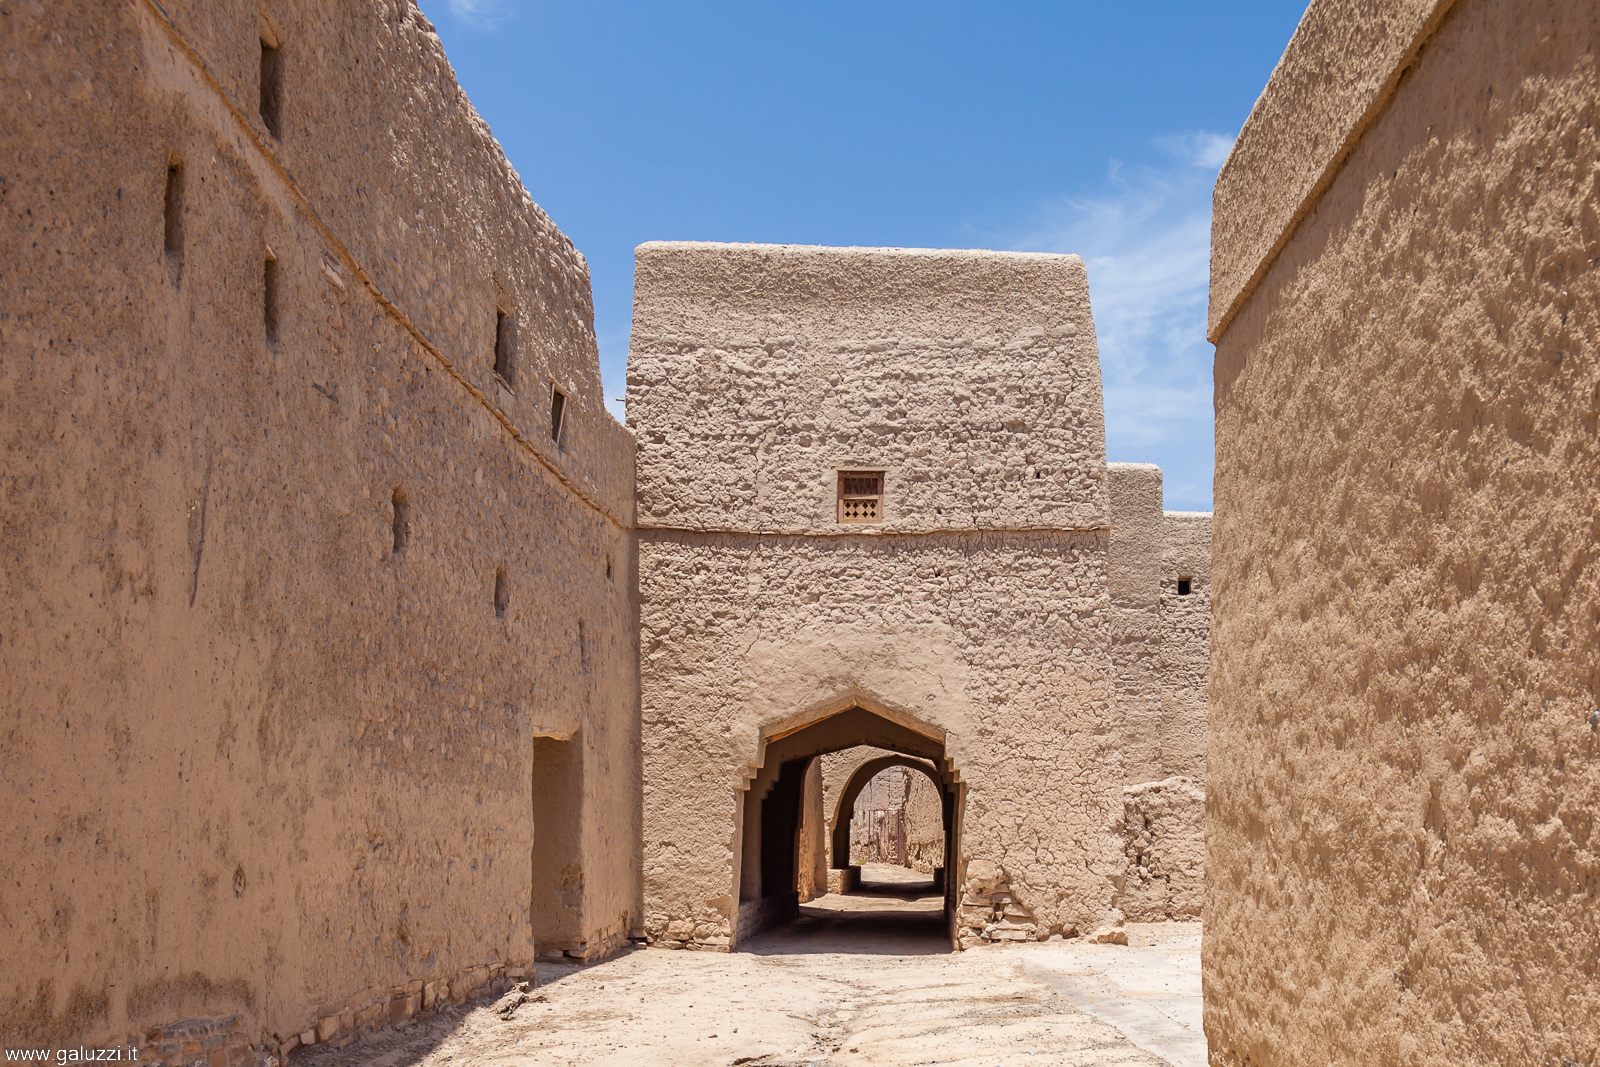 Minah, risale al quinto secolo dell’egira (1100). Contiene più di 376 case, 250 pozzi, 4 moschee ed è il villaggio più grande ed antico in Oman